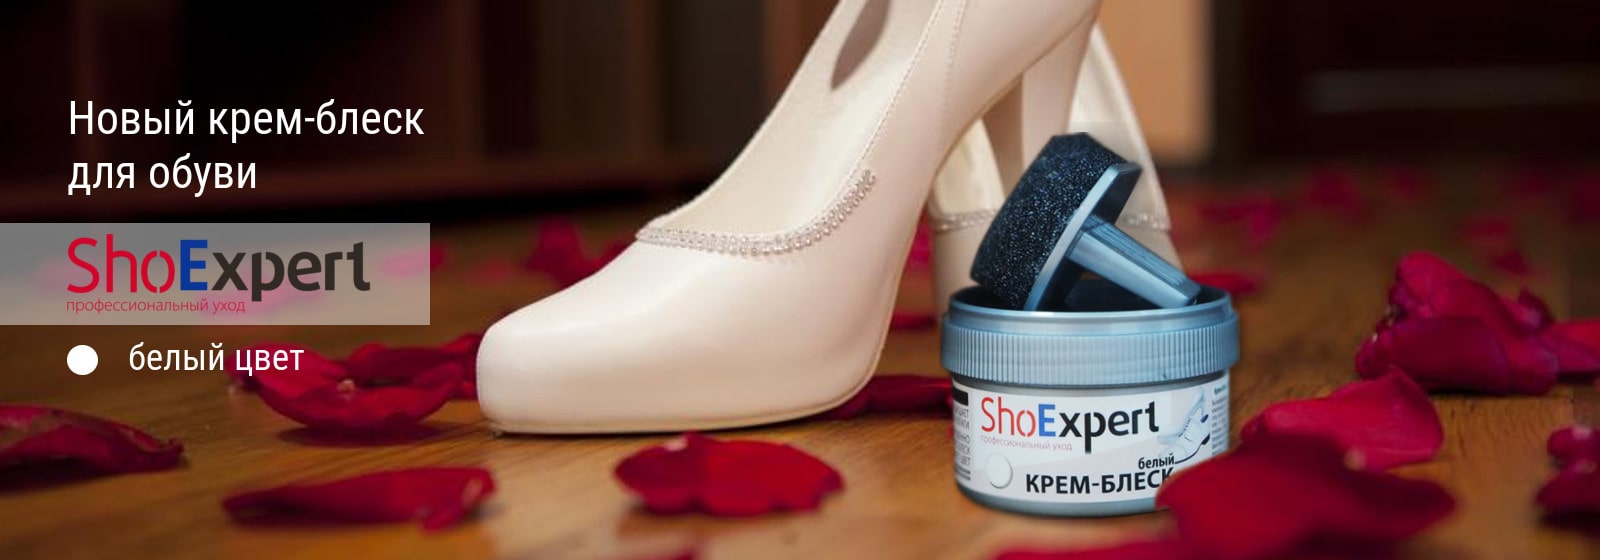 Белый обувной крем ShoExpert - новинка